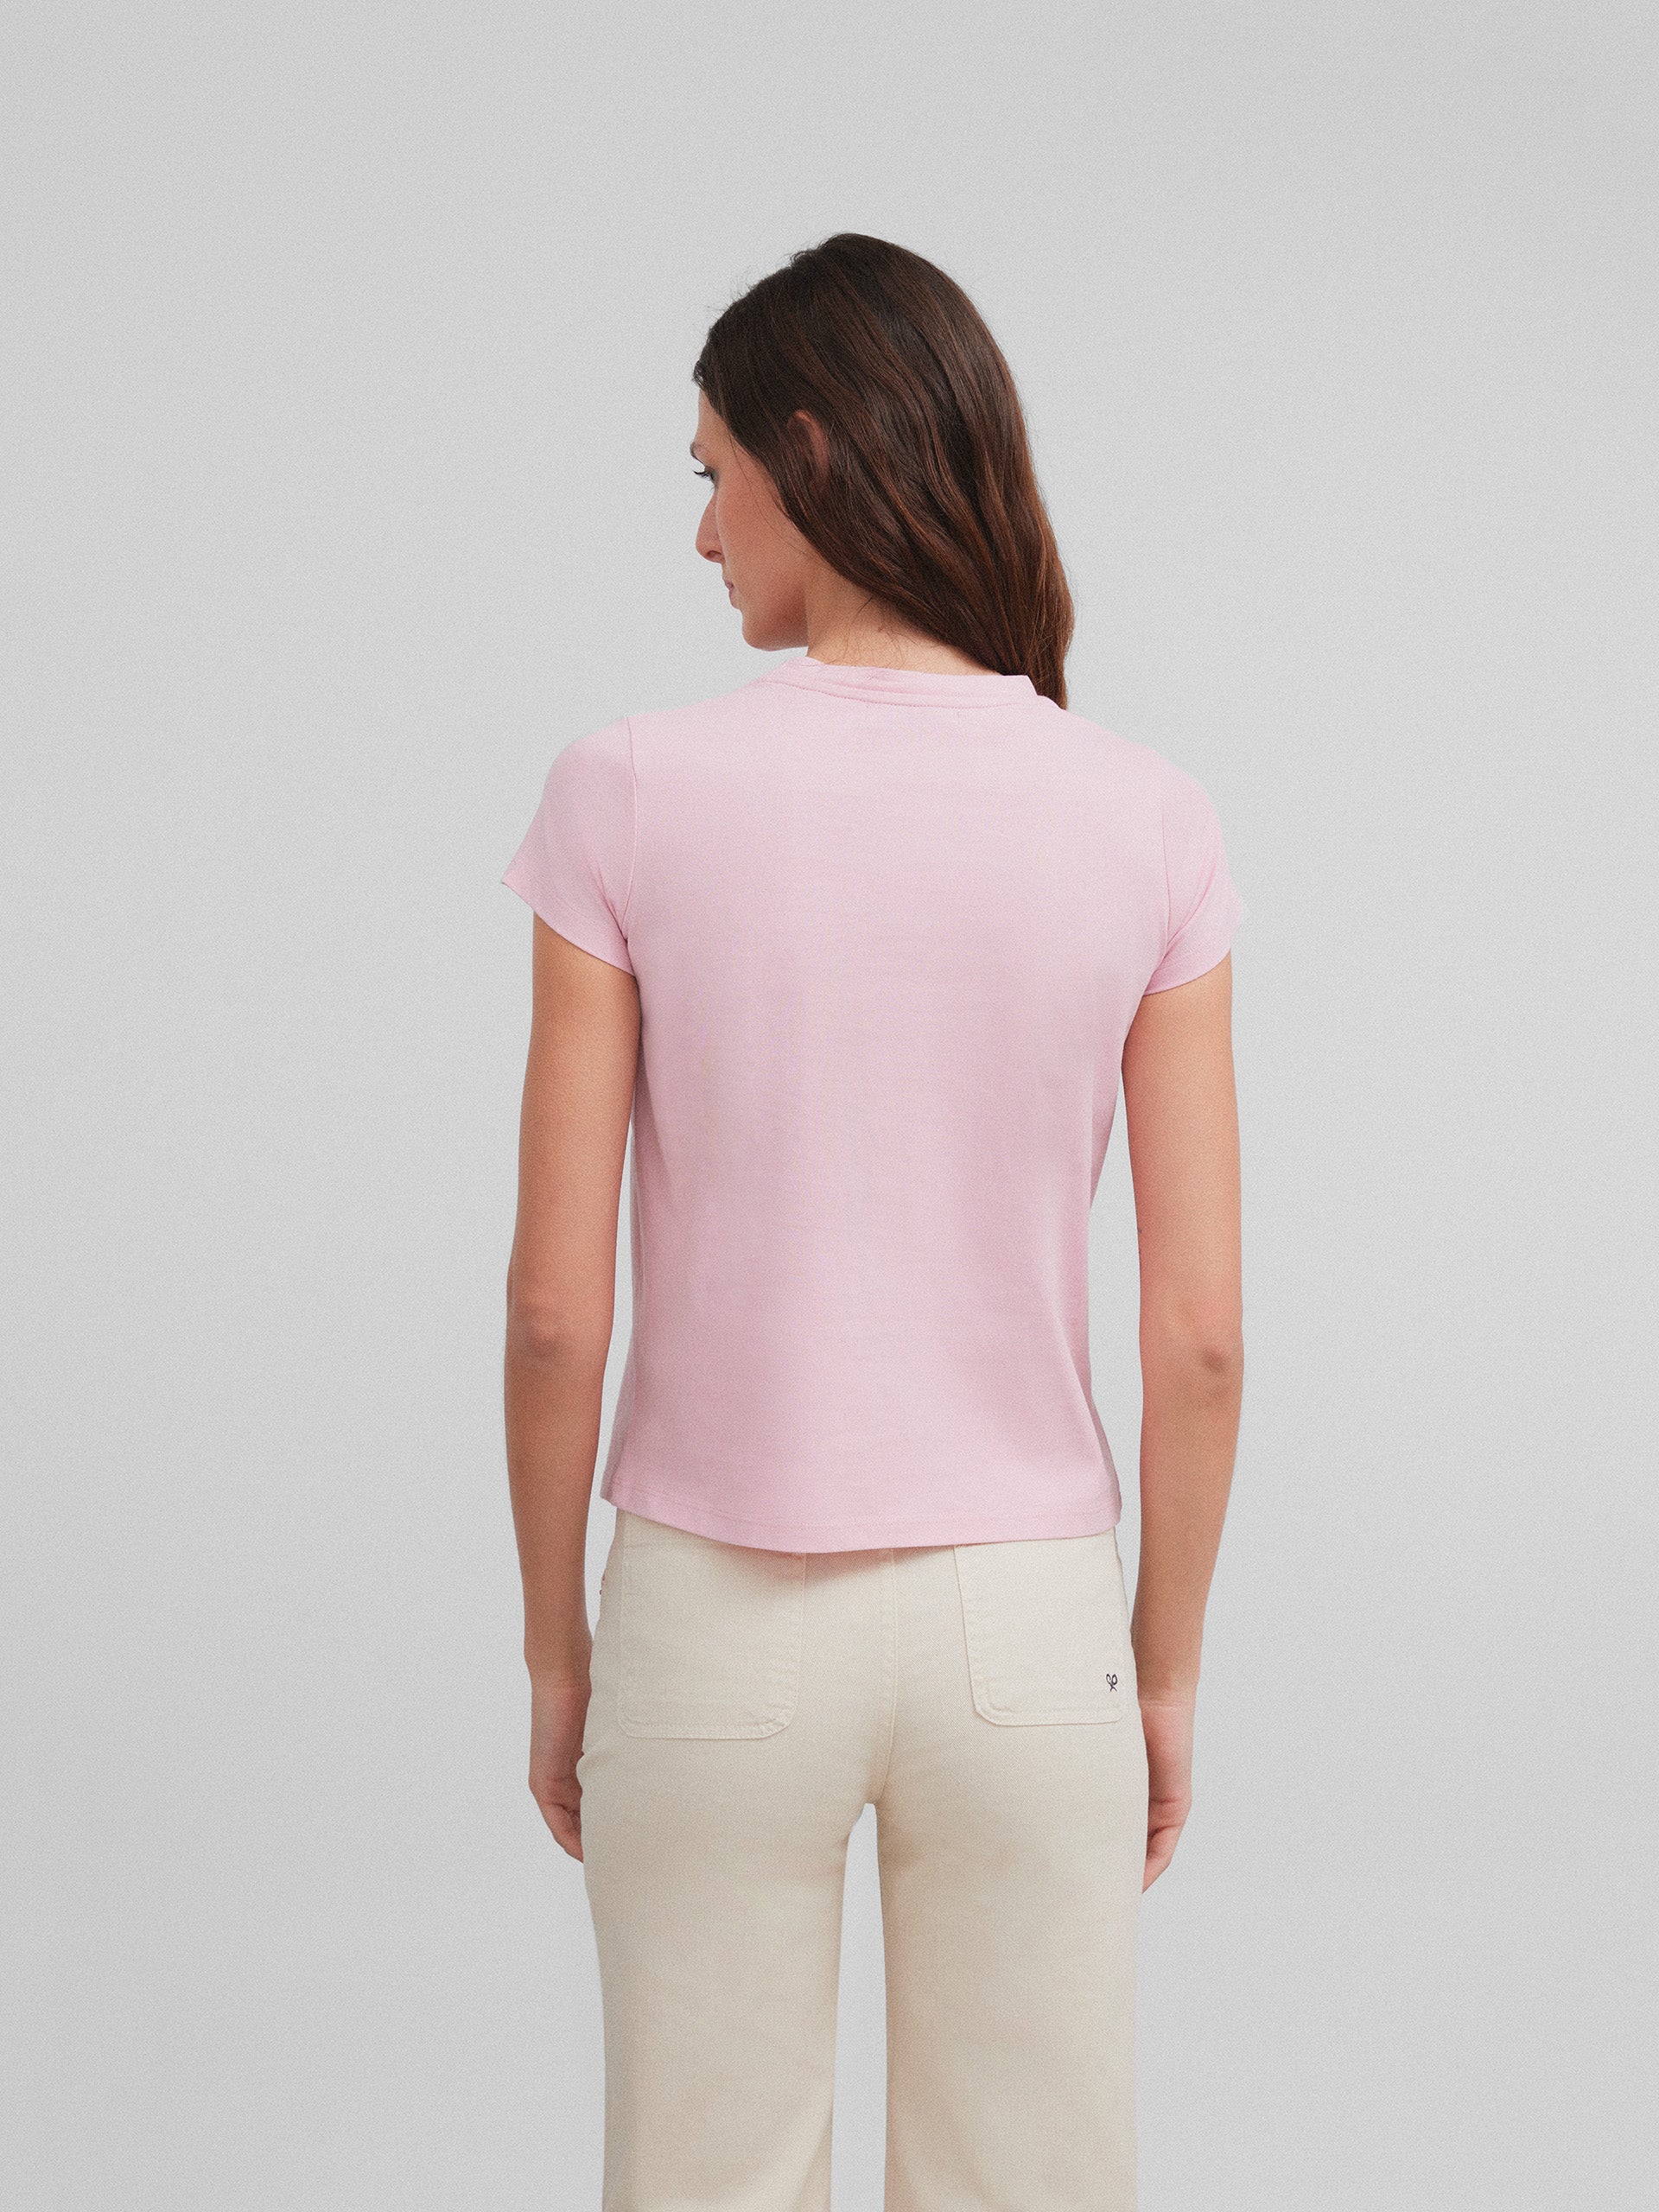 Camiseta woman clasica rosa claro